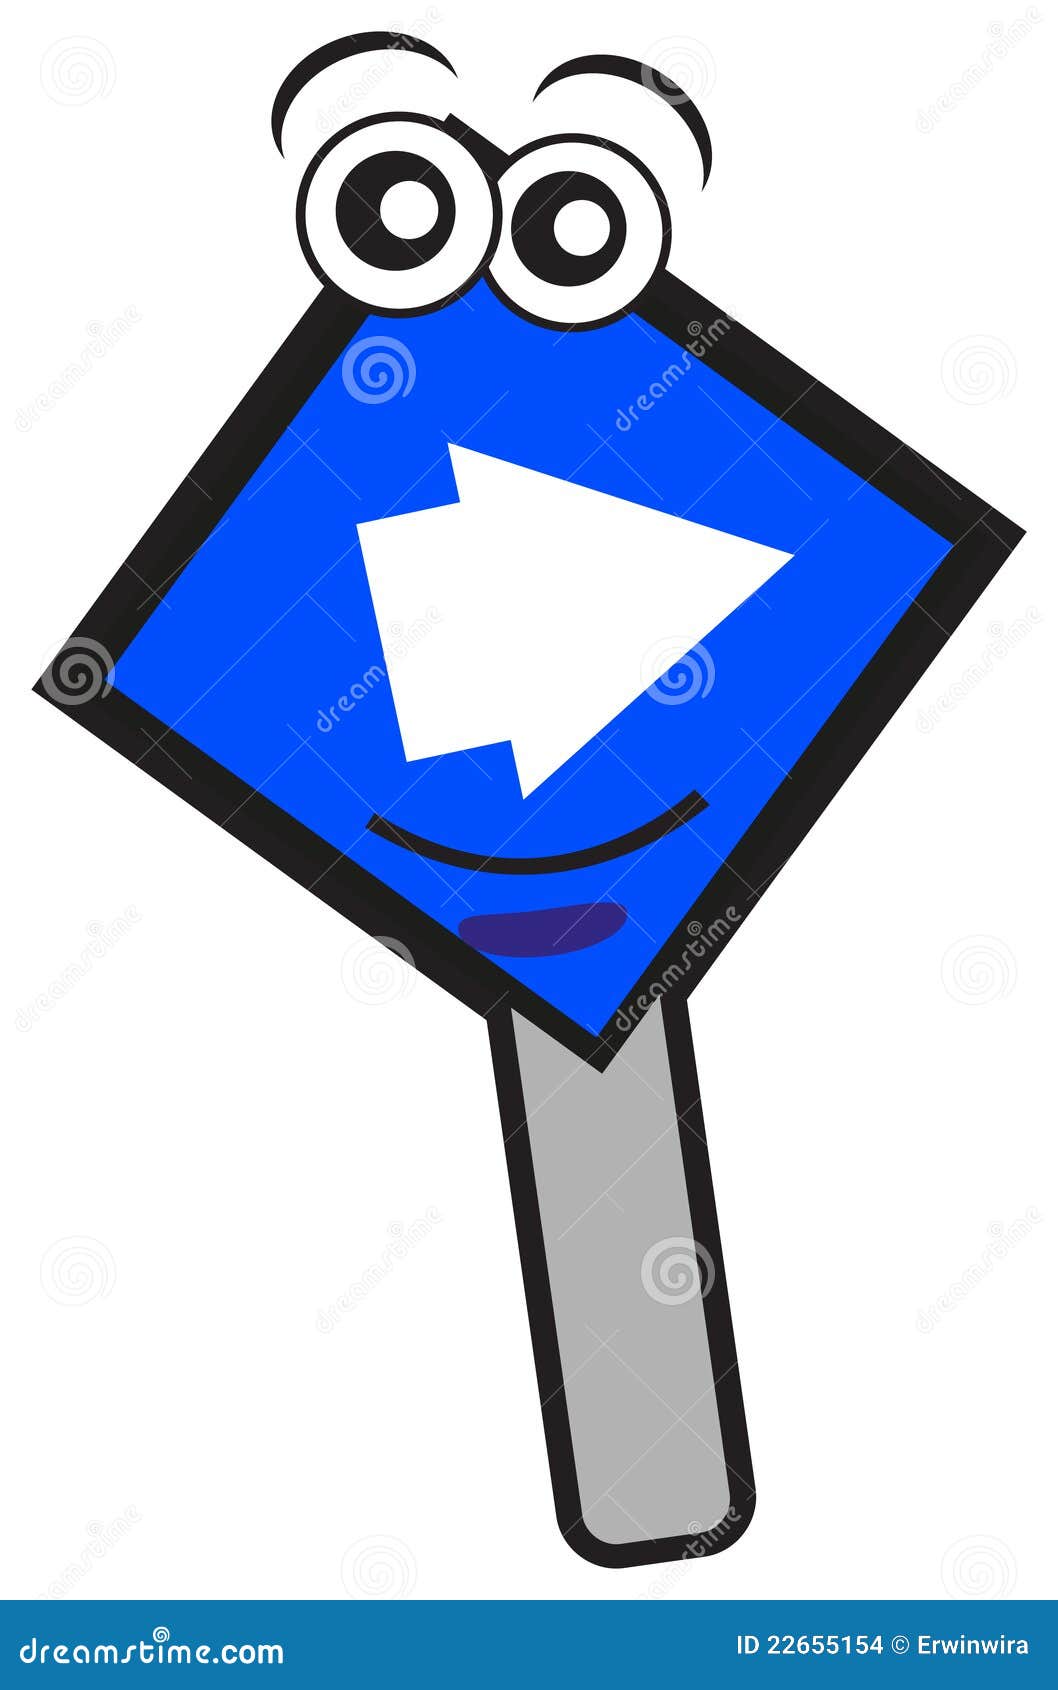 向右转符号. 例证向右转向量创建的交通标志